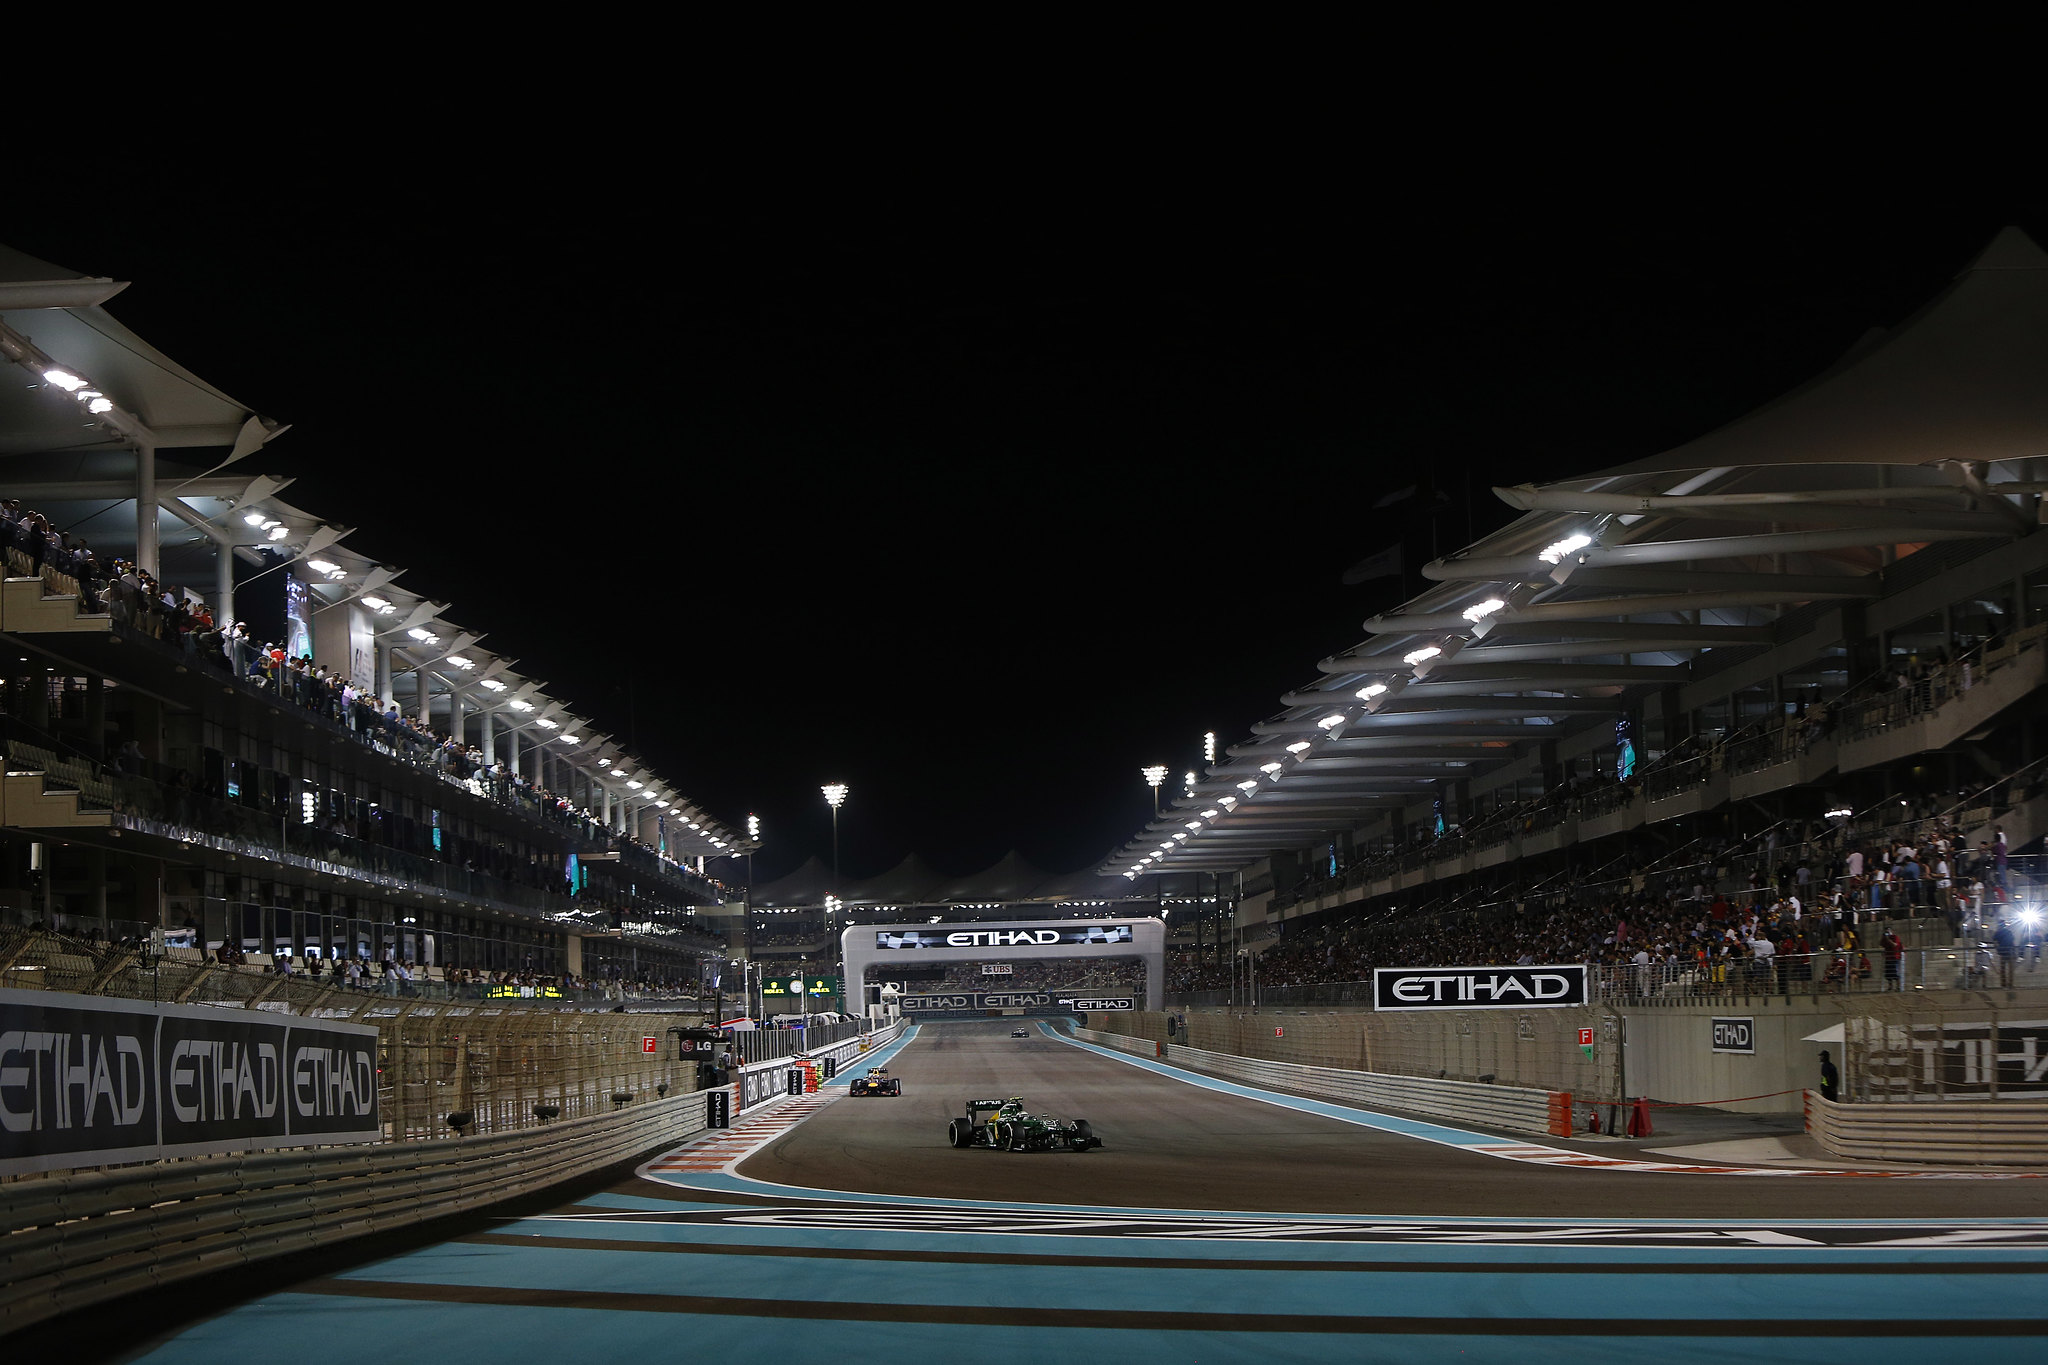 Abu Dhabi F1